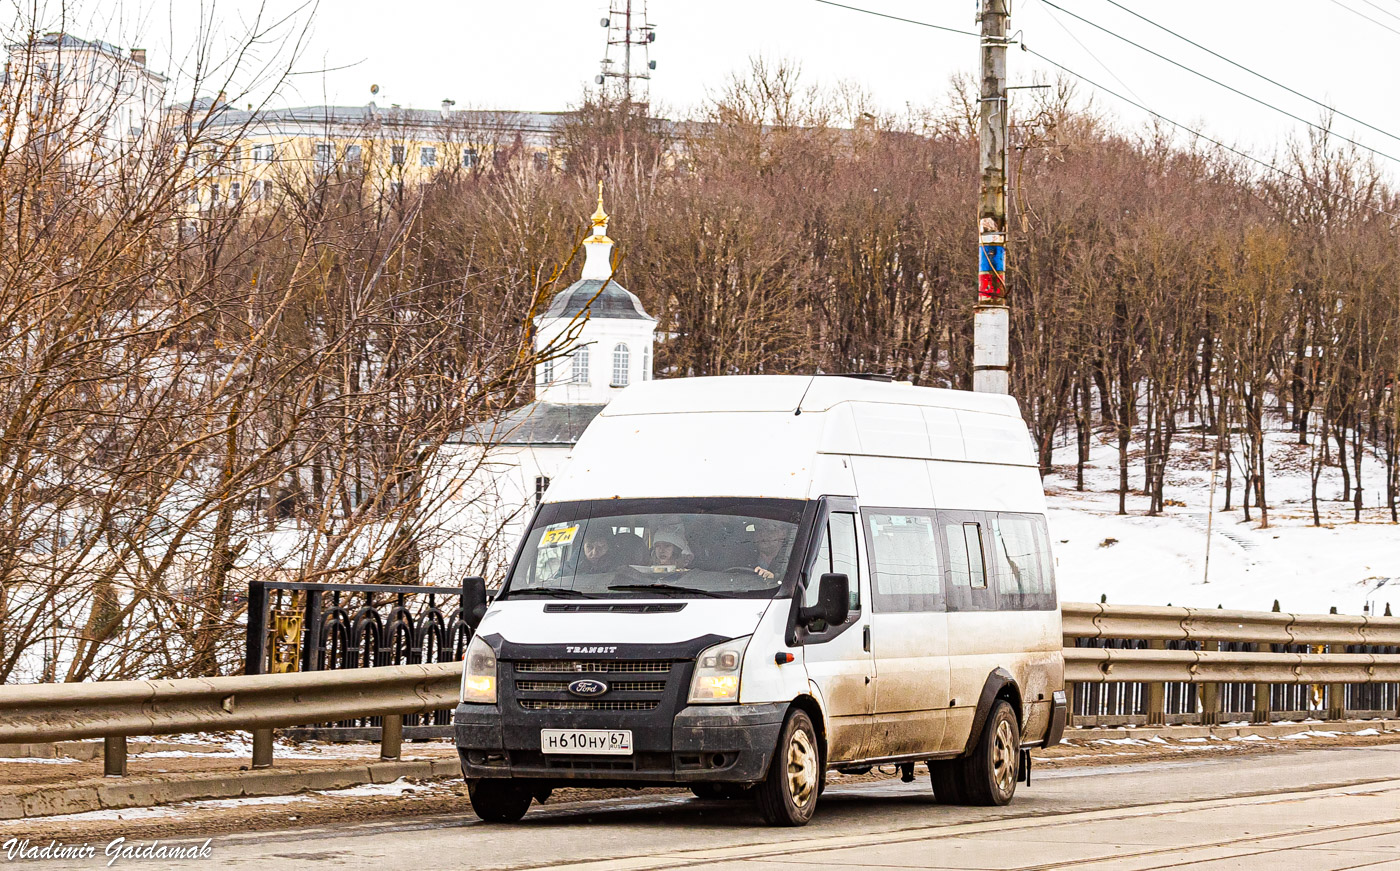 Smolensk, Nizhegorodets-222709 (Ford Transit) č. Н 610 НУ 67